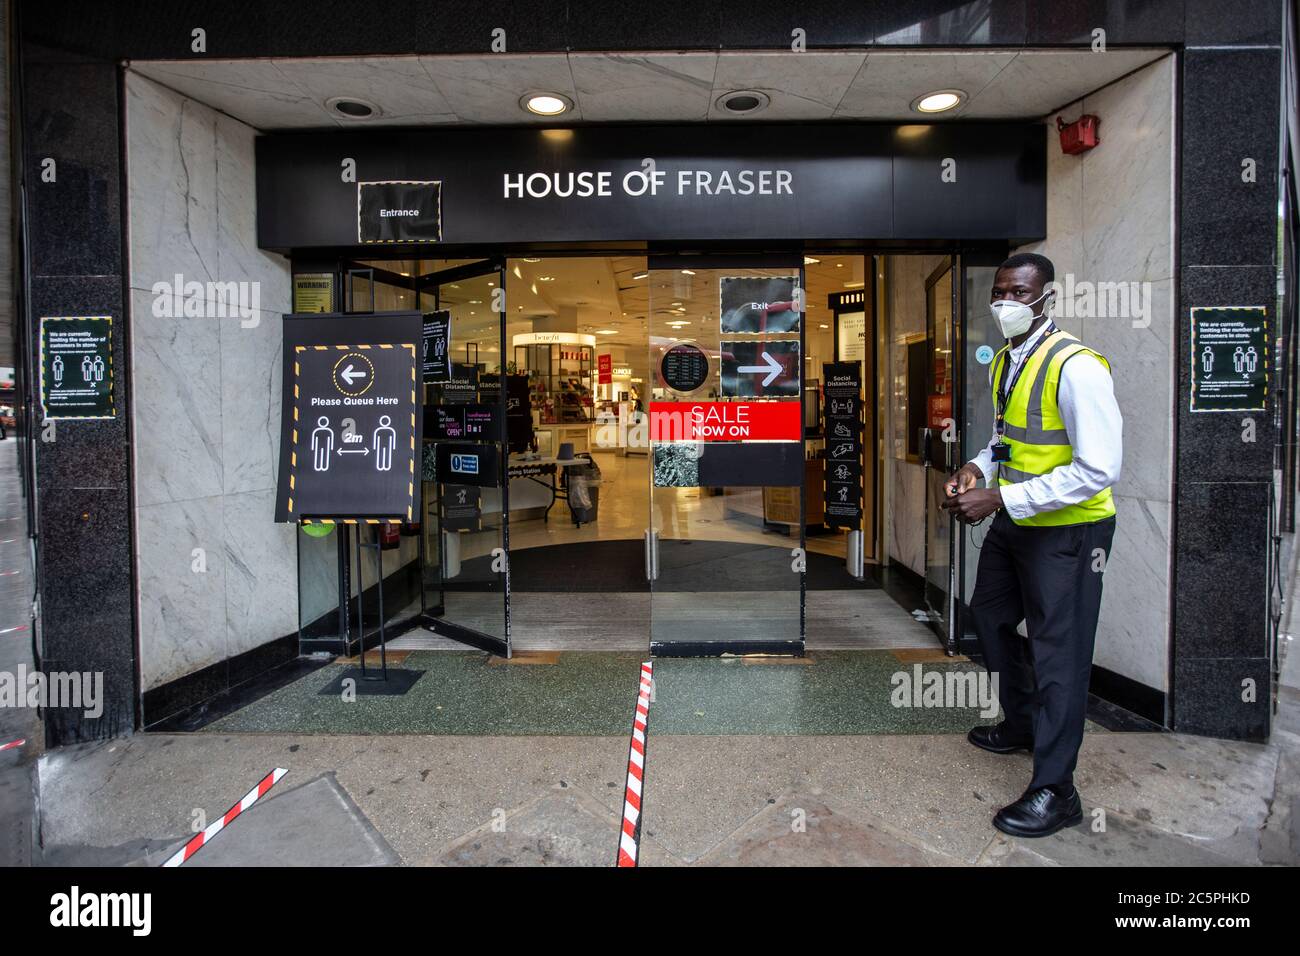 La sécurité portant un masque facial de protection dirigeant les acheteurs vers la porte correcte de House of Fraser pour maintenir la distance sociale, Kingston, Royaume-Uni Banque D'Images